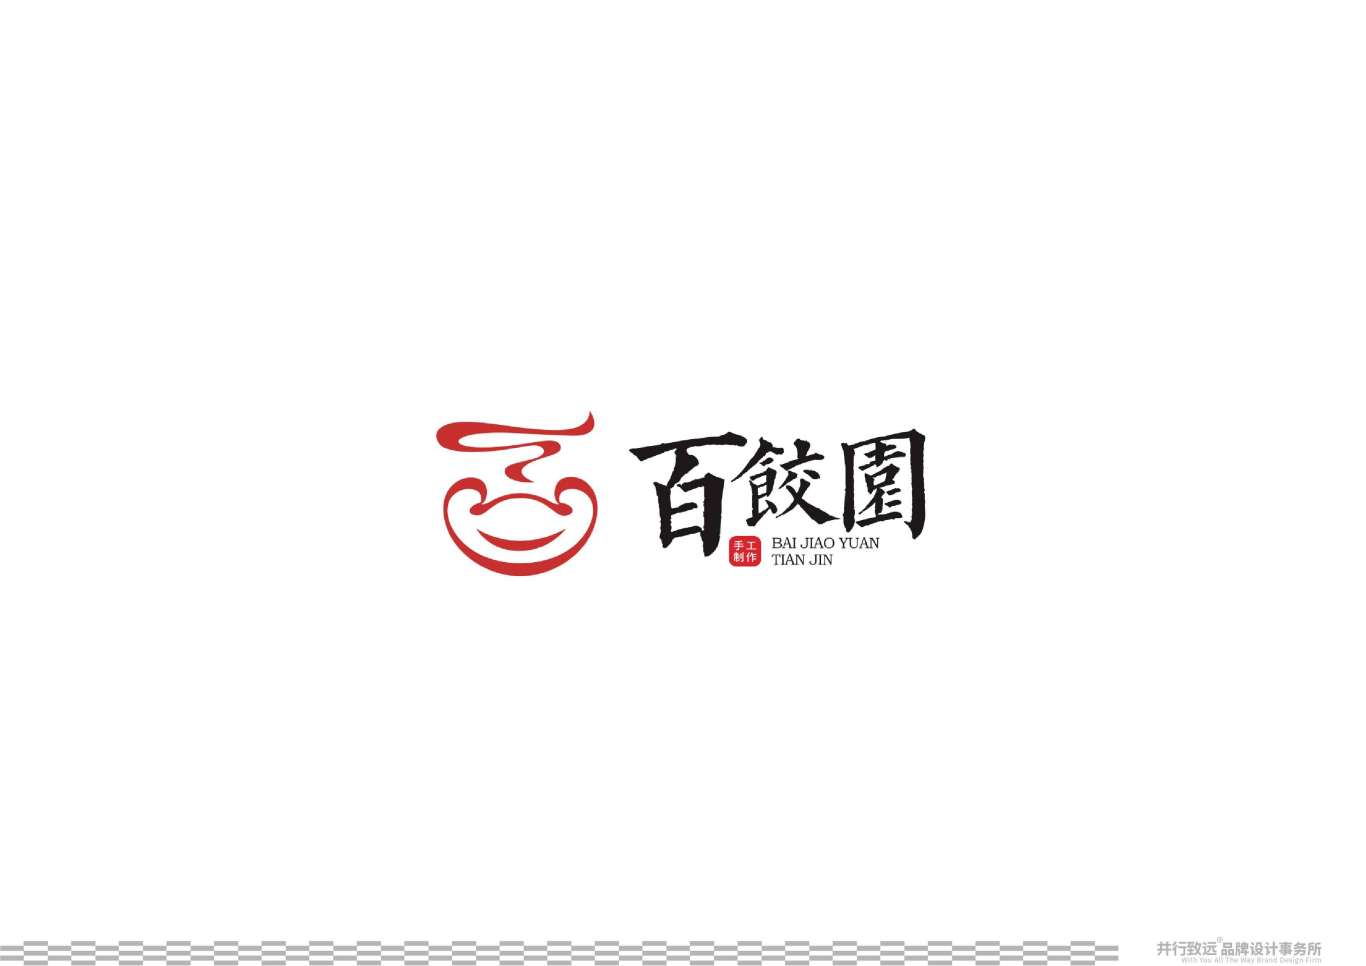 天津百饺园logo升级设计图26